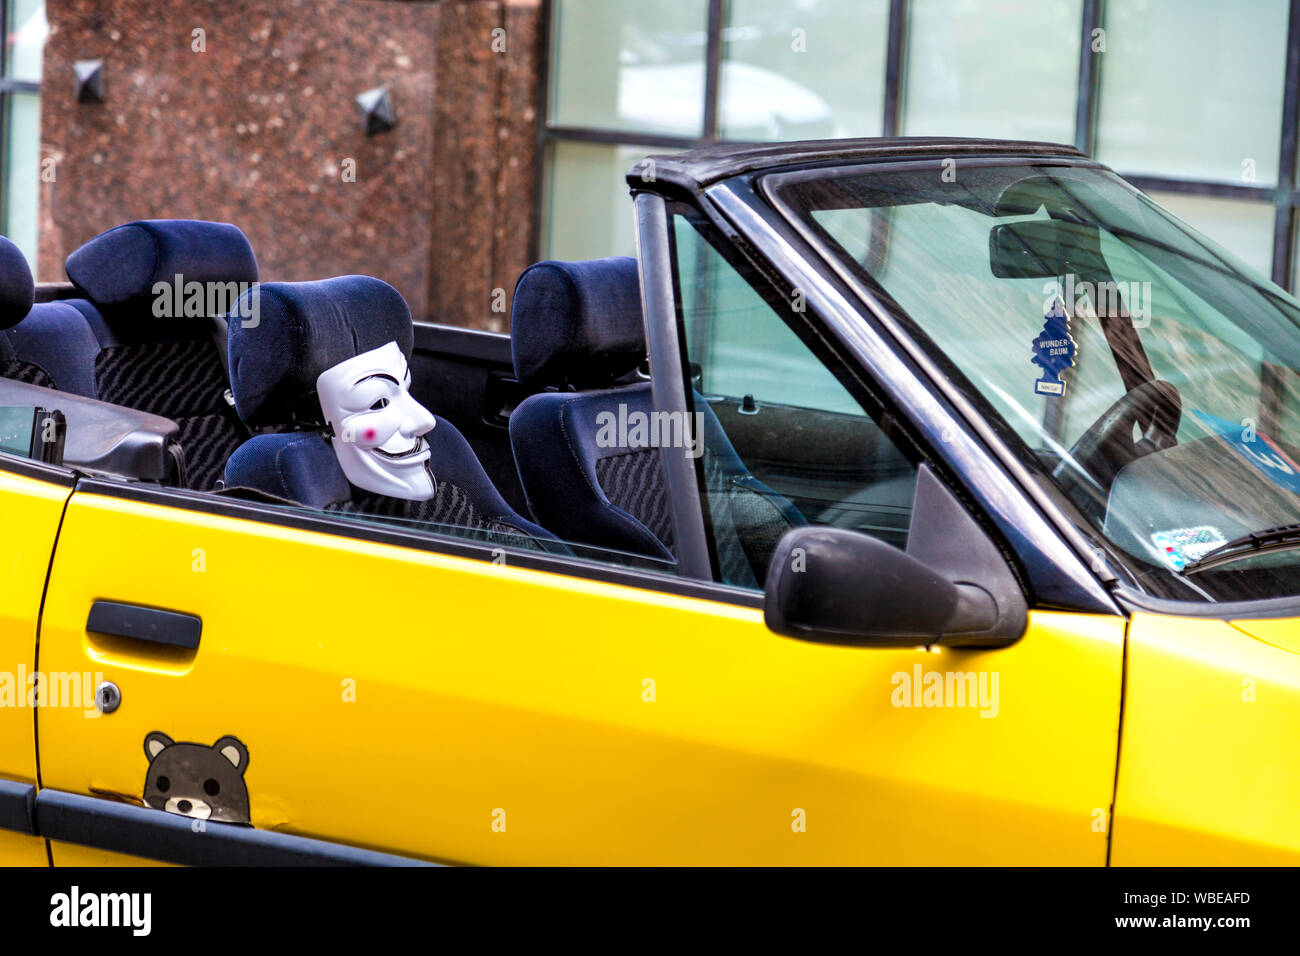 Voiture cabriolet jaune garée dans la rue avec un masque V pour Vendetta fixé au siège, Varsovie, Pologne Banque D'Images